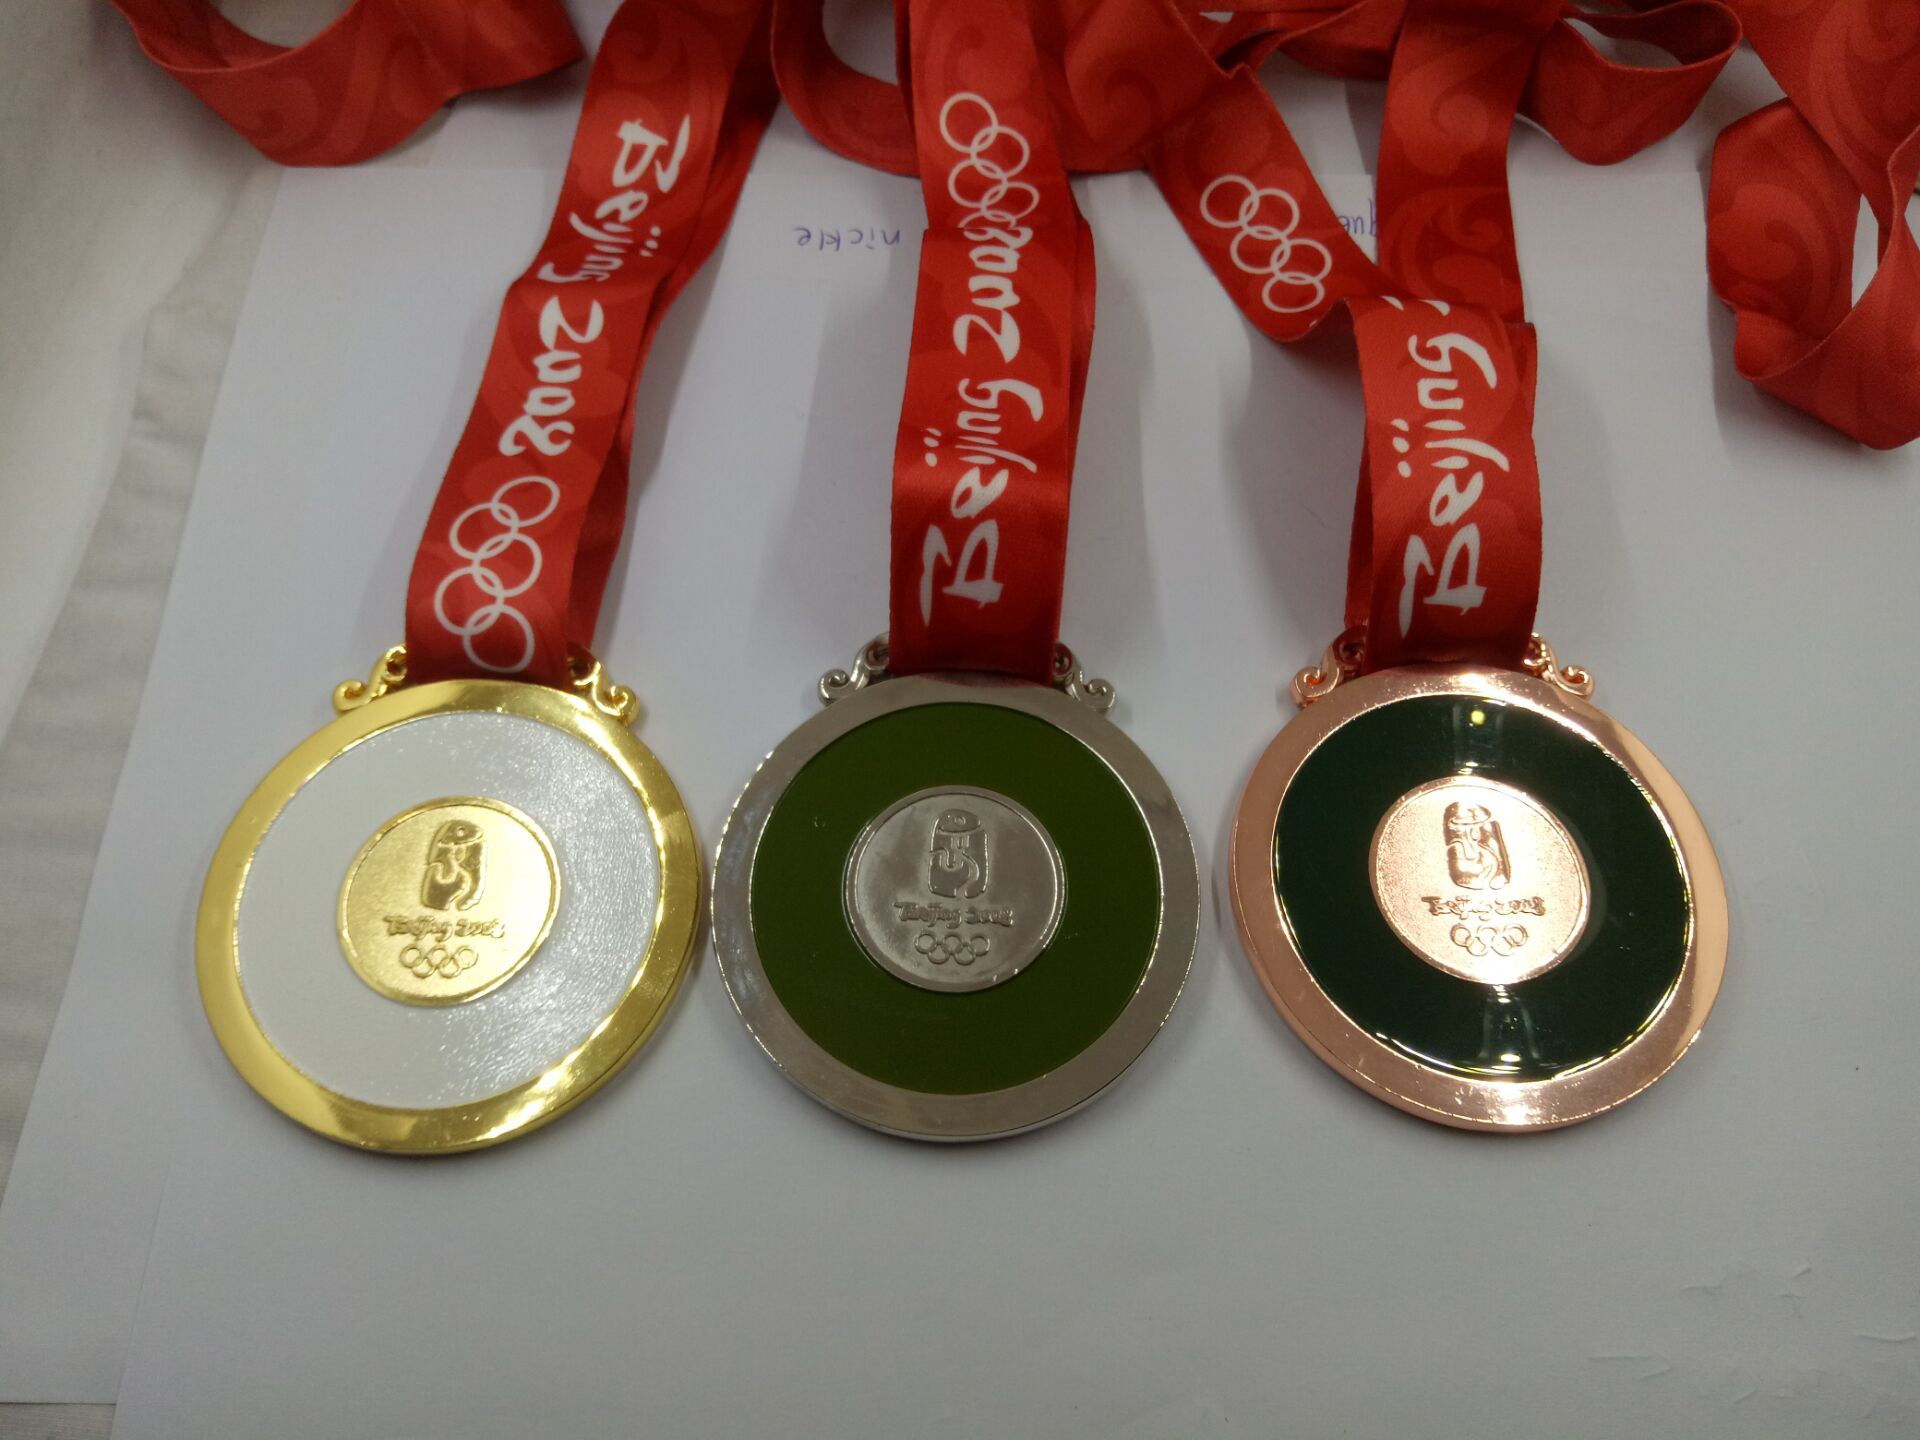 Nuevas medallas de oro olímpico de la reproducción del diseño (XY160914)